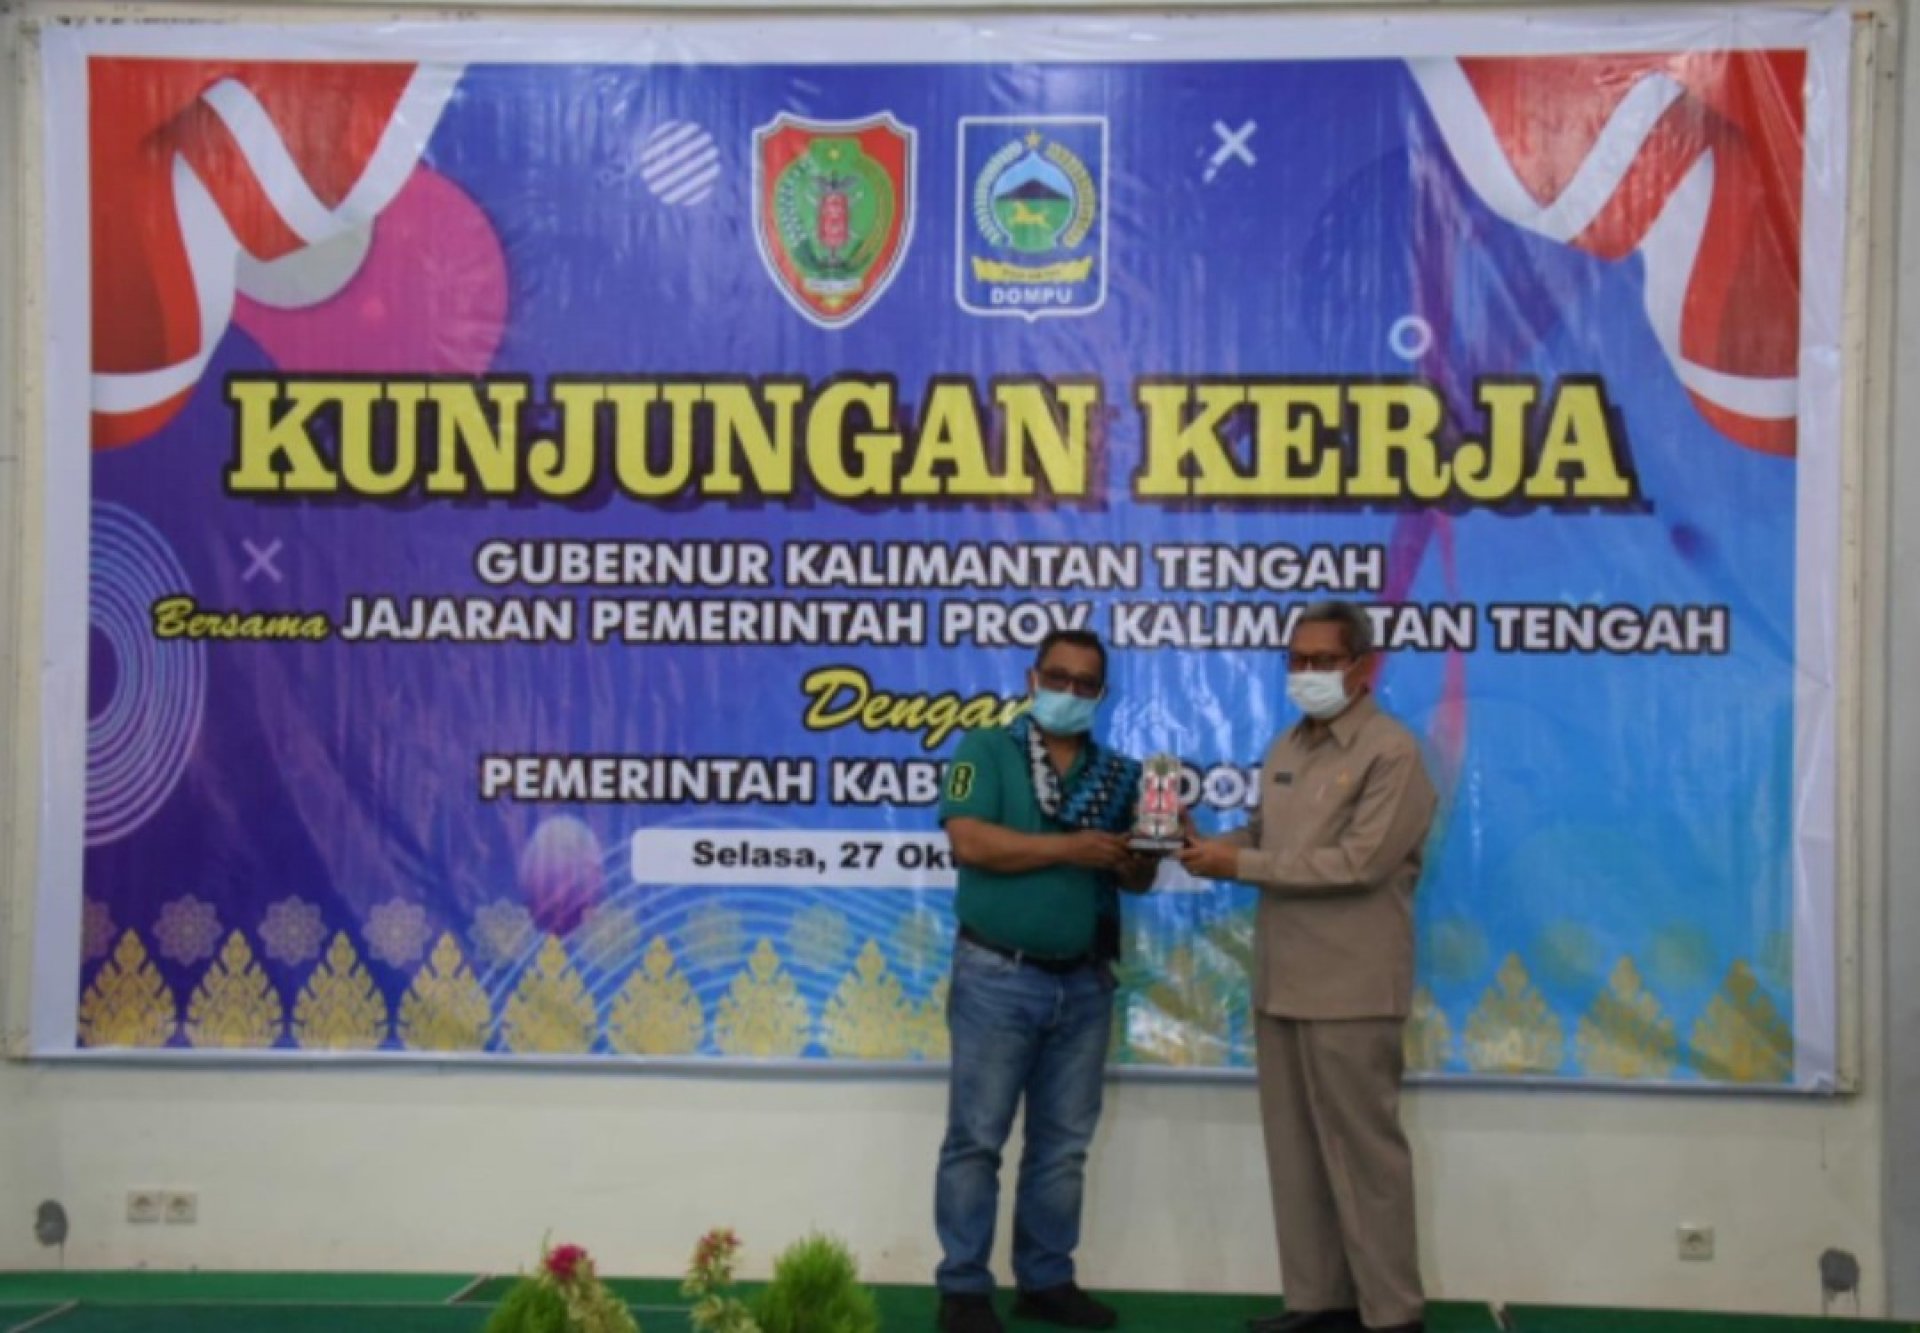 Kunjungan Kerja ke Kabupaten Dompu, Plt. Gubernur Kalteng Dalami Pengembangan Pertanian dan Peternakan Setempat